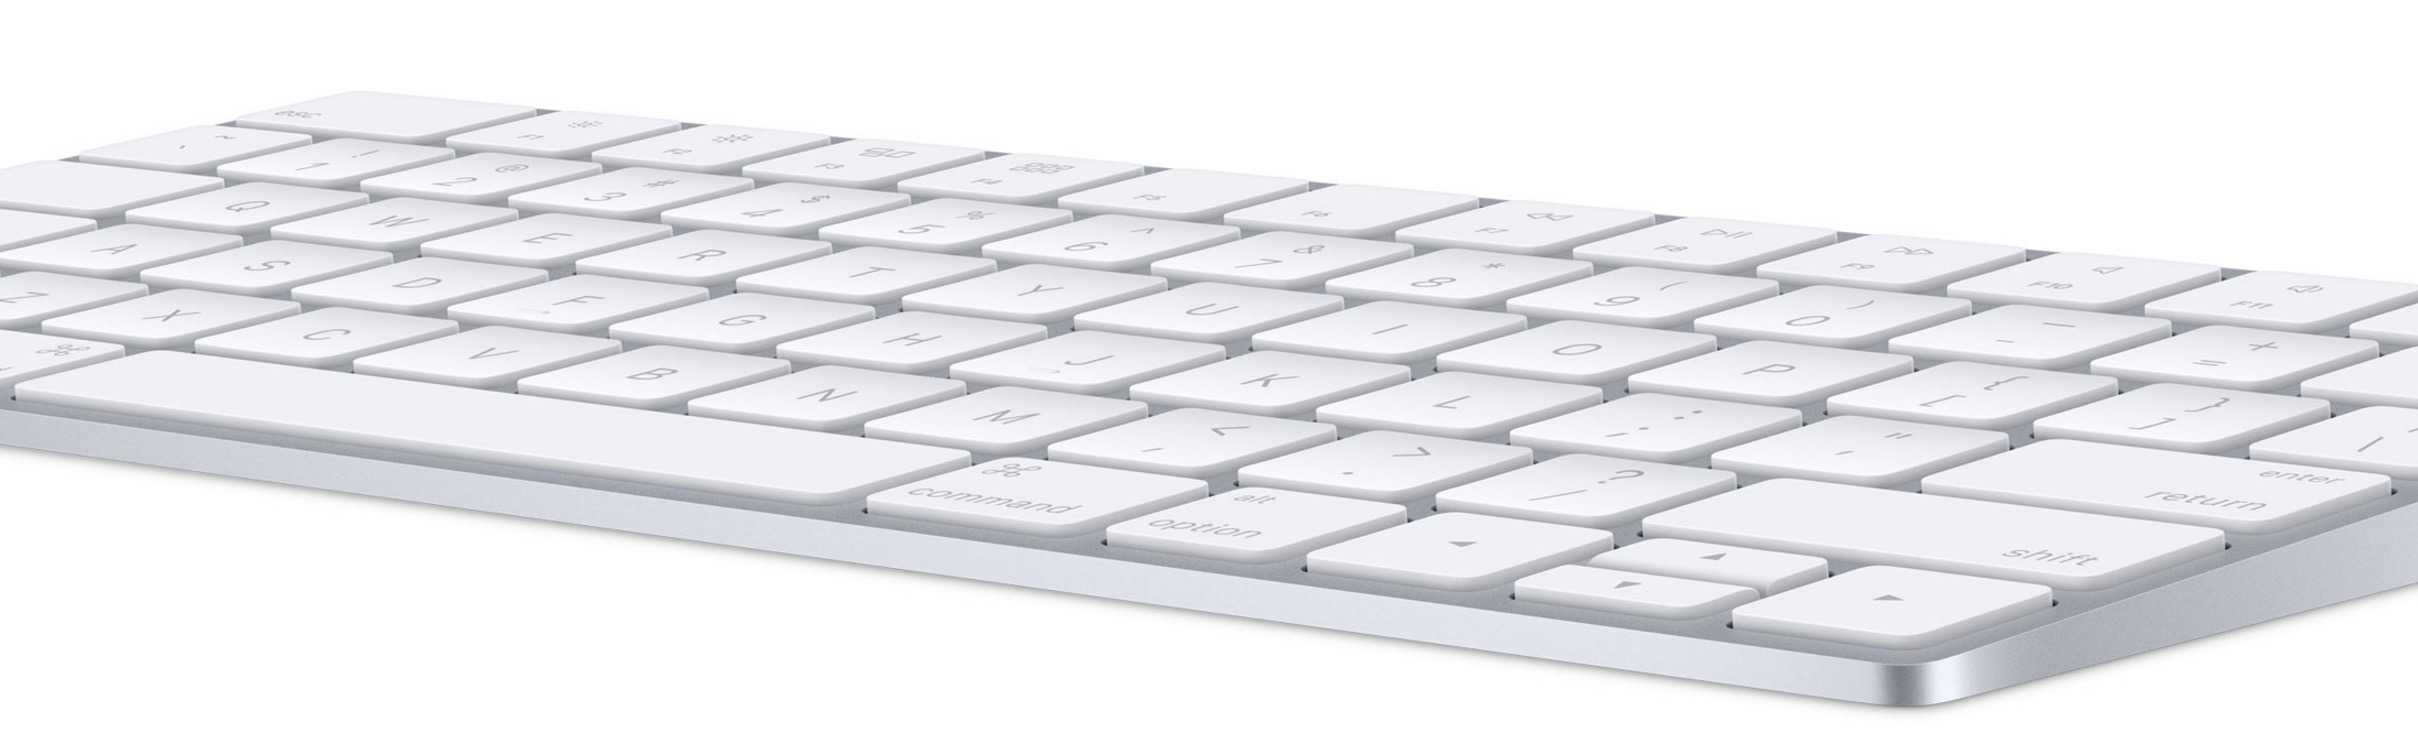 Bluetooth keyboard for mac